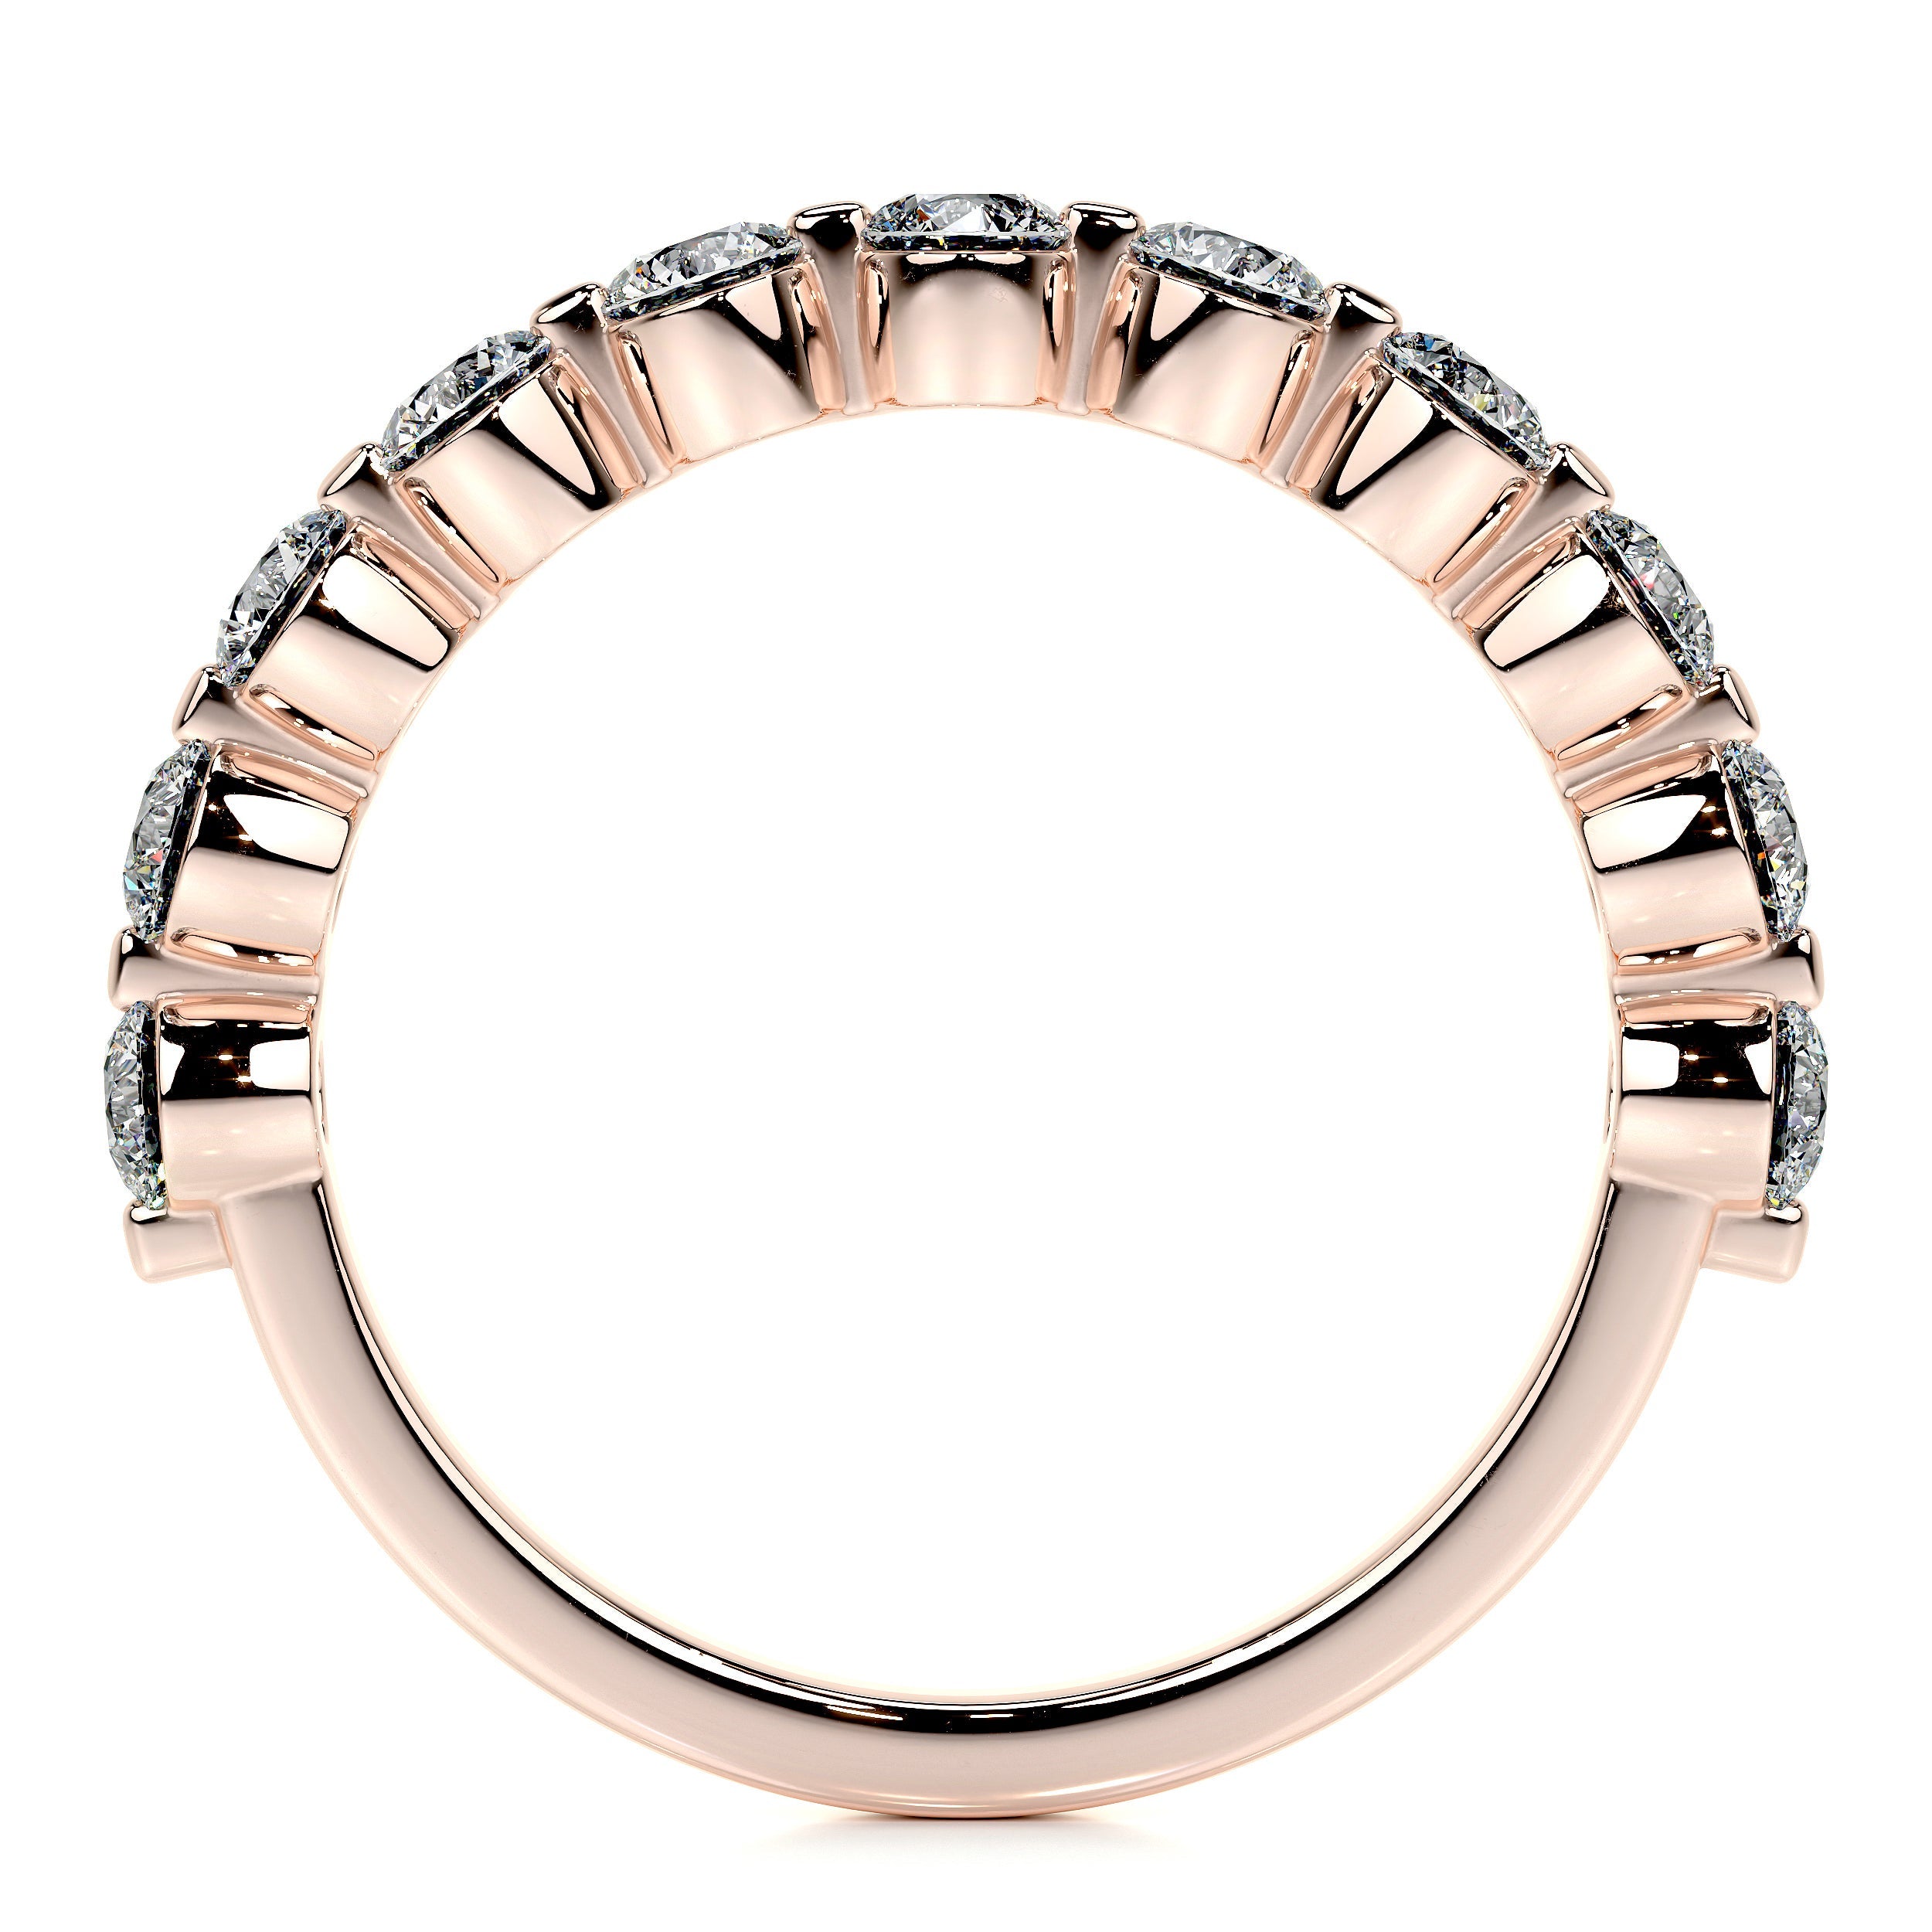 Josie Lab Grown Half-Eternity Wedding Ring   (1 Carat) -14K Rose Gold (RTS)